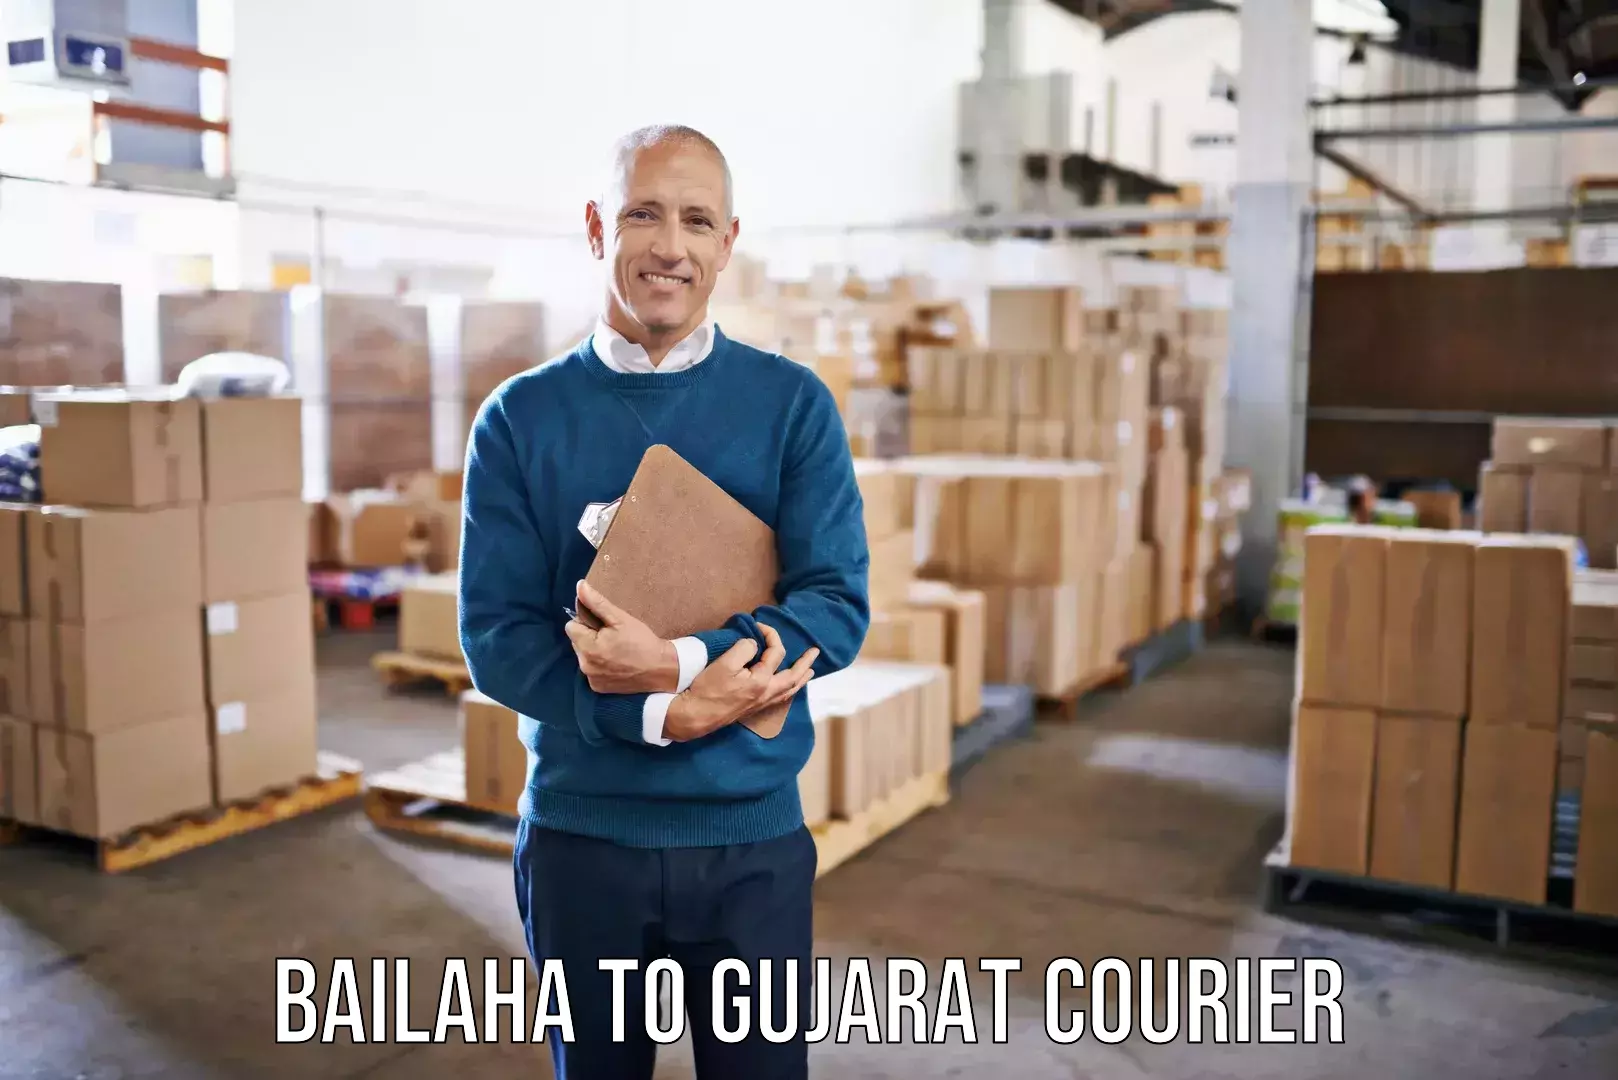 Doorstep moving services Bailaha to Gujarat